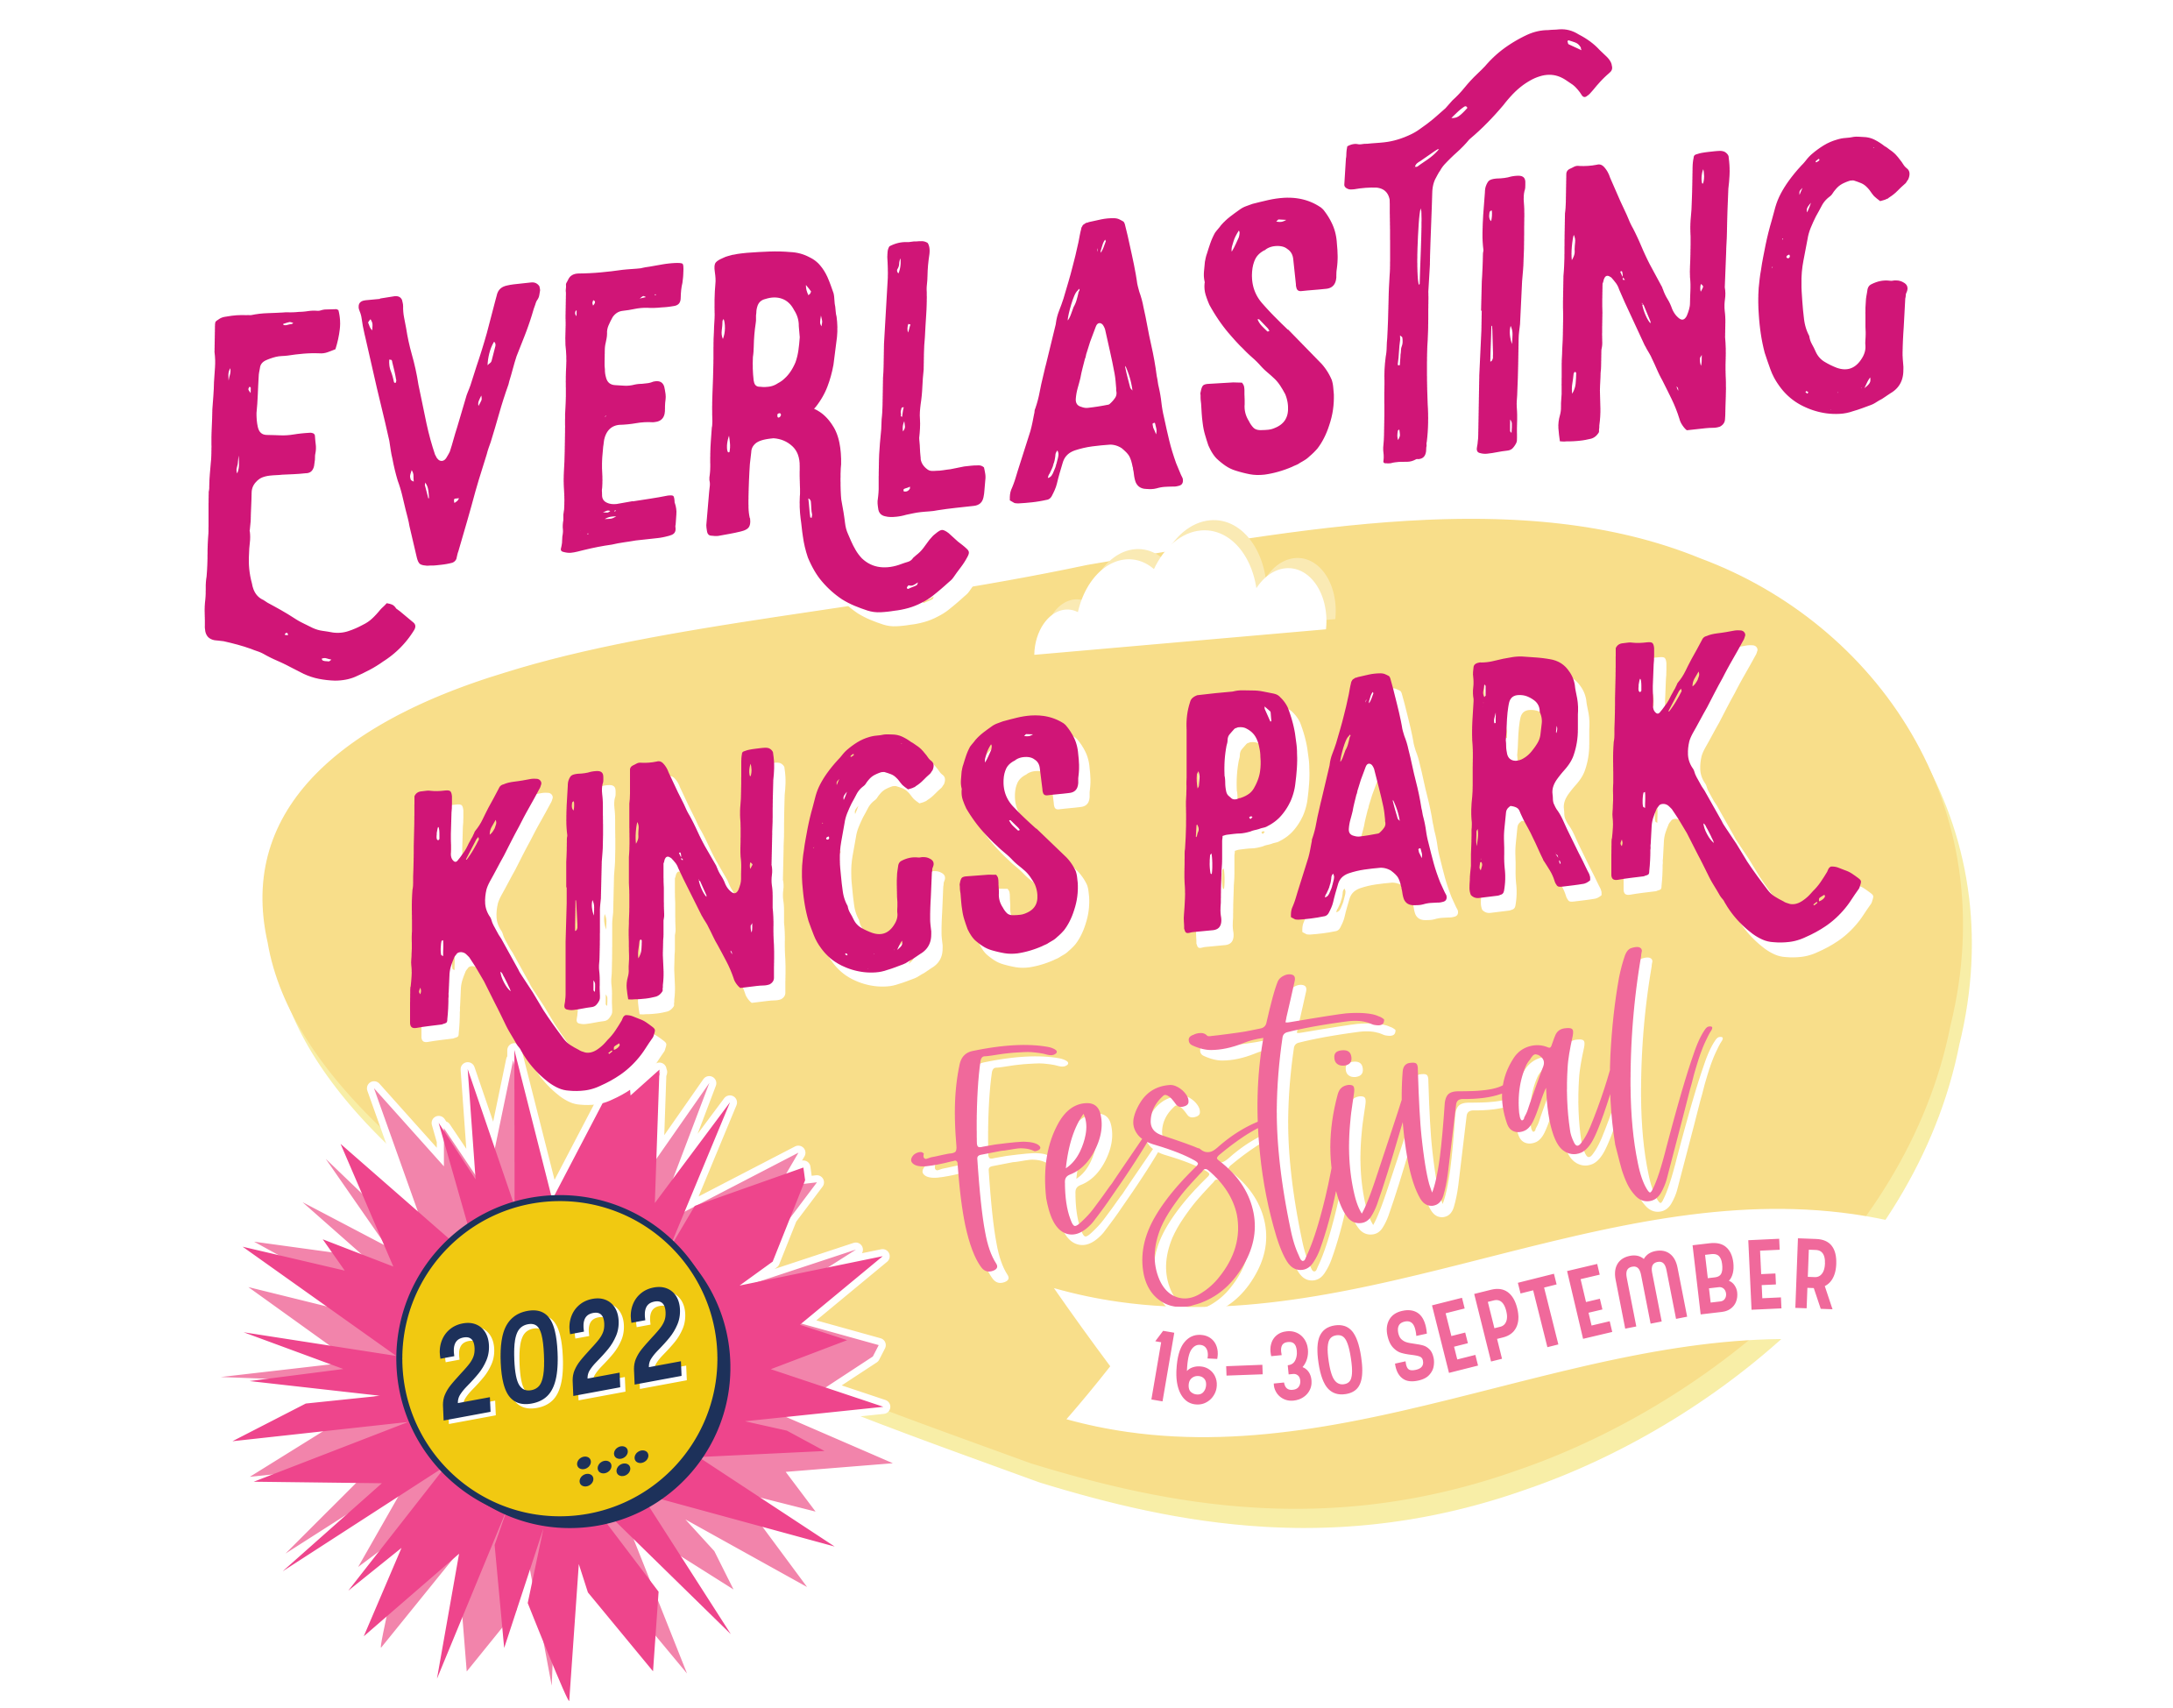 Everlasting Kings Park Festival Perth is OK!